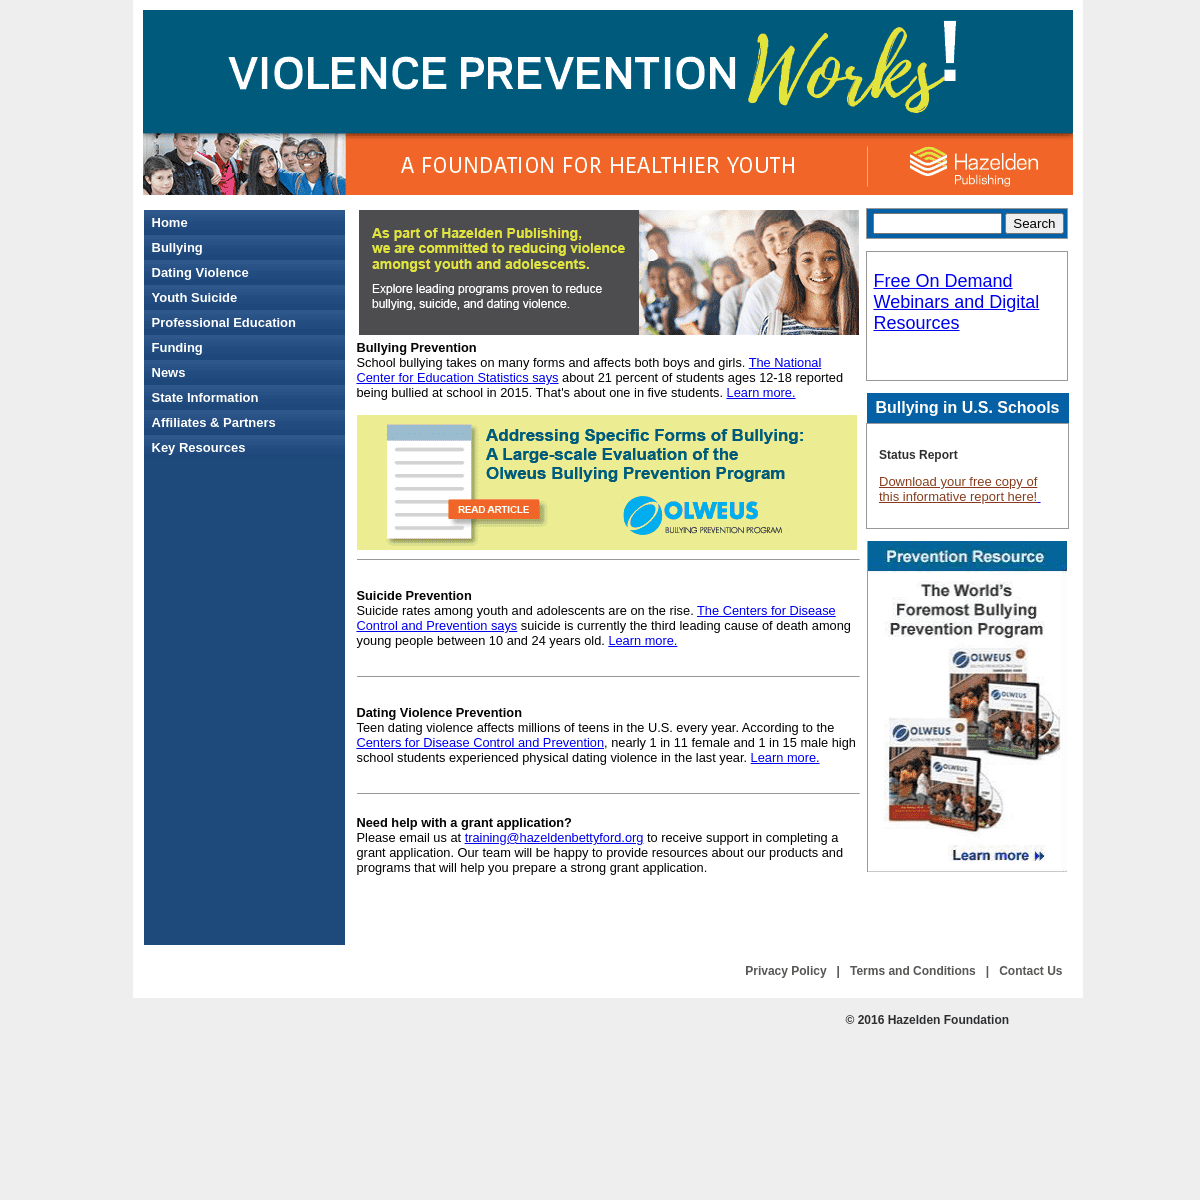 A complete backup of https://violencepreventionworks.org